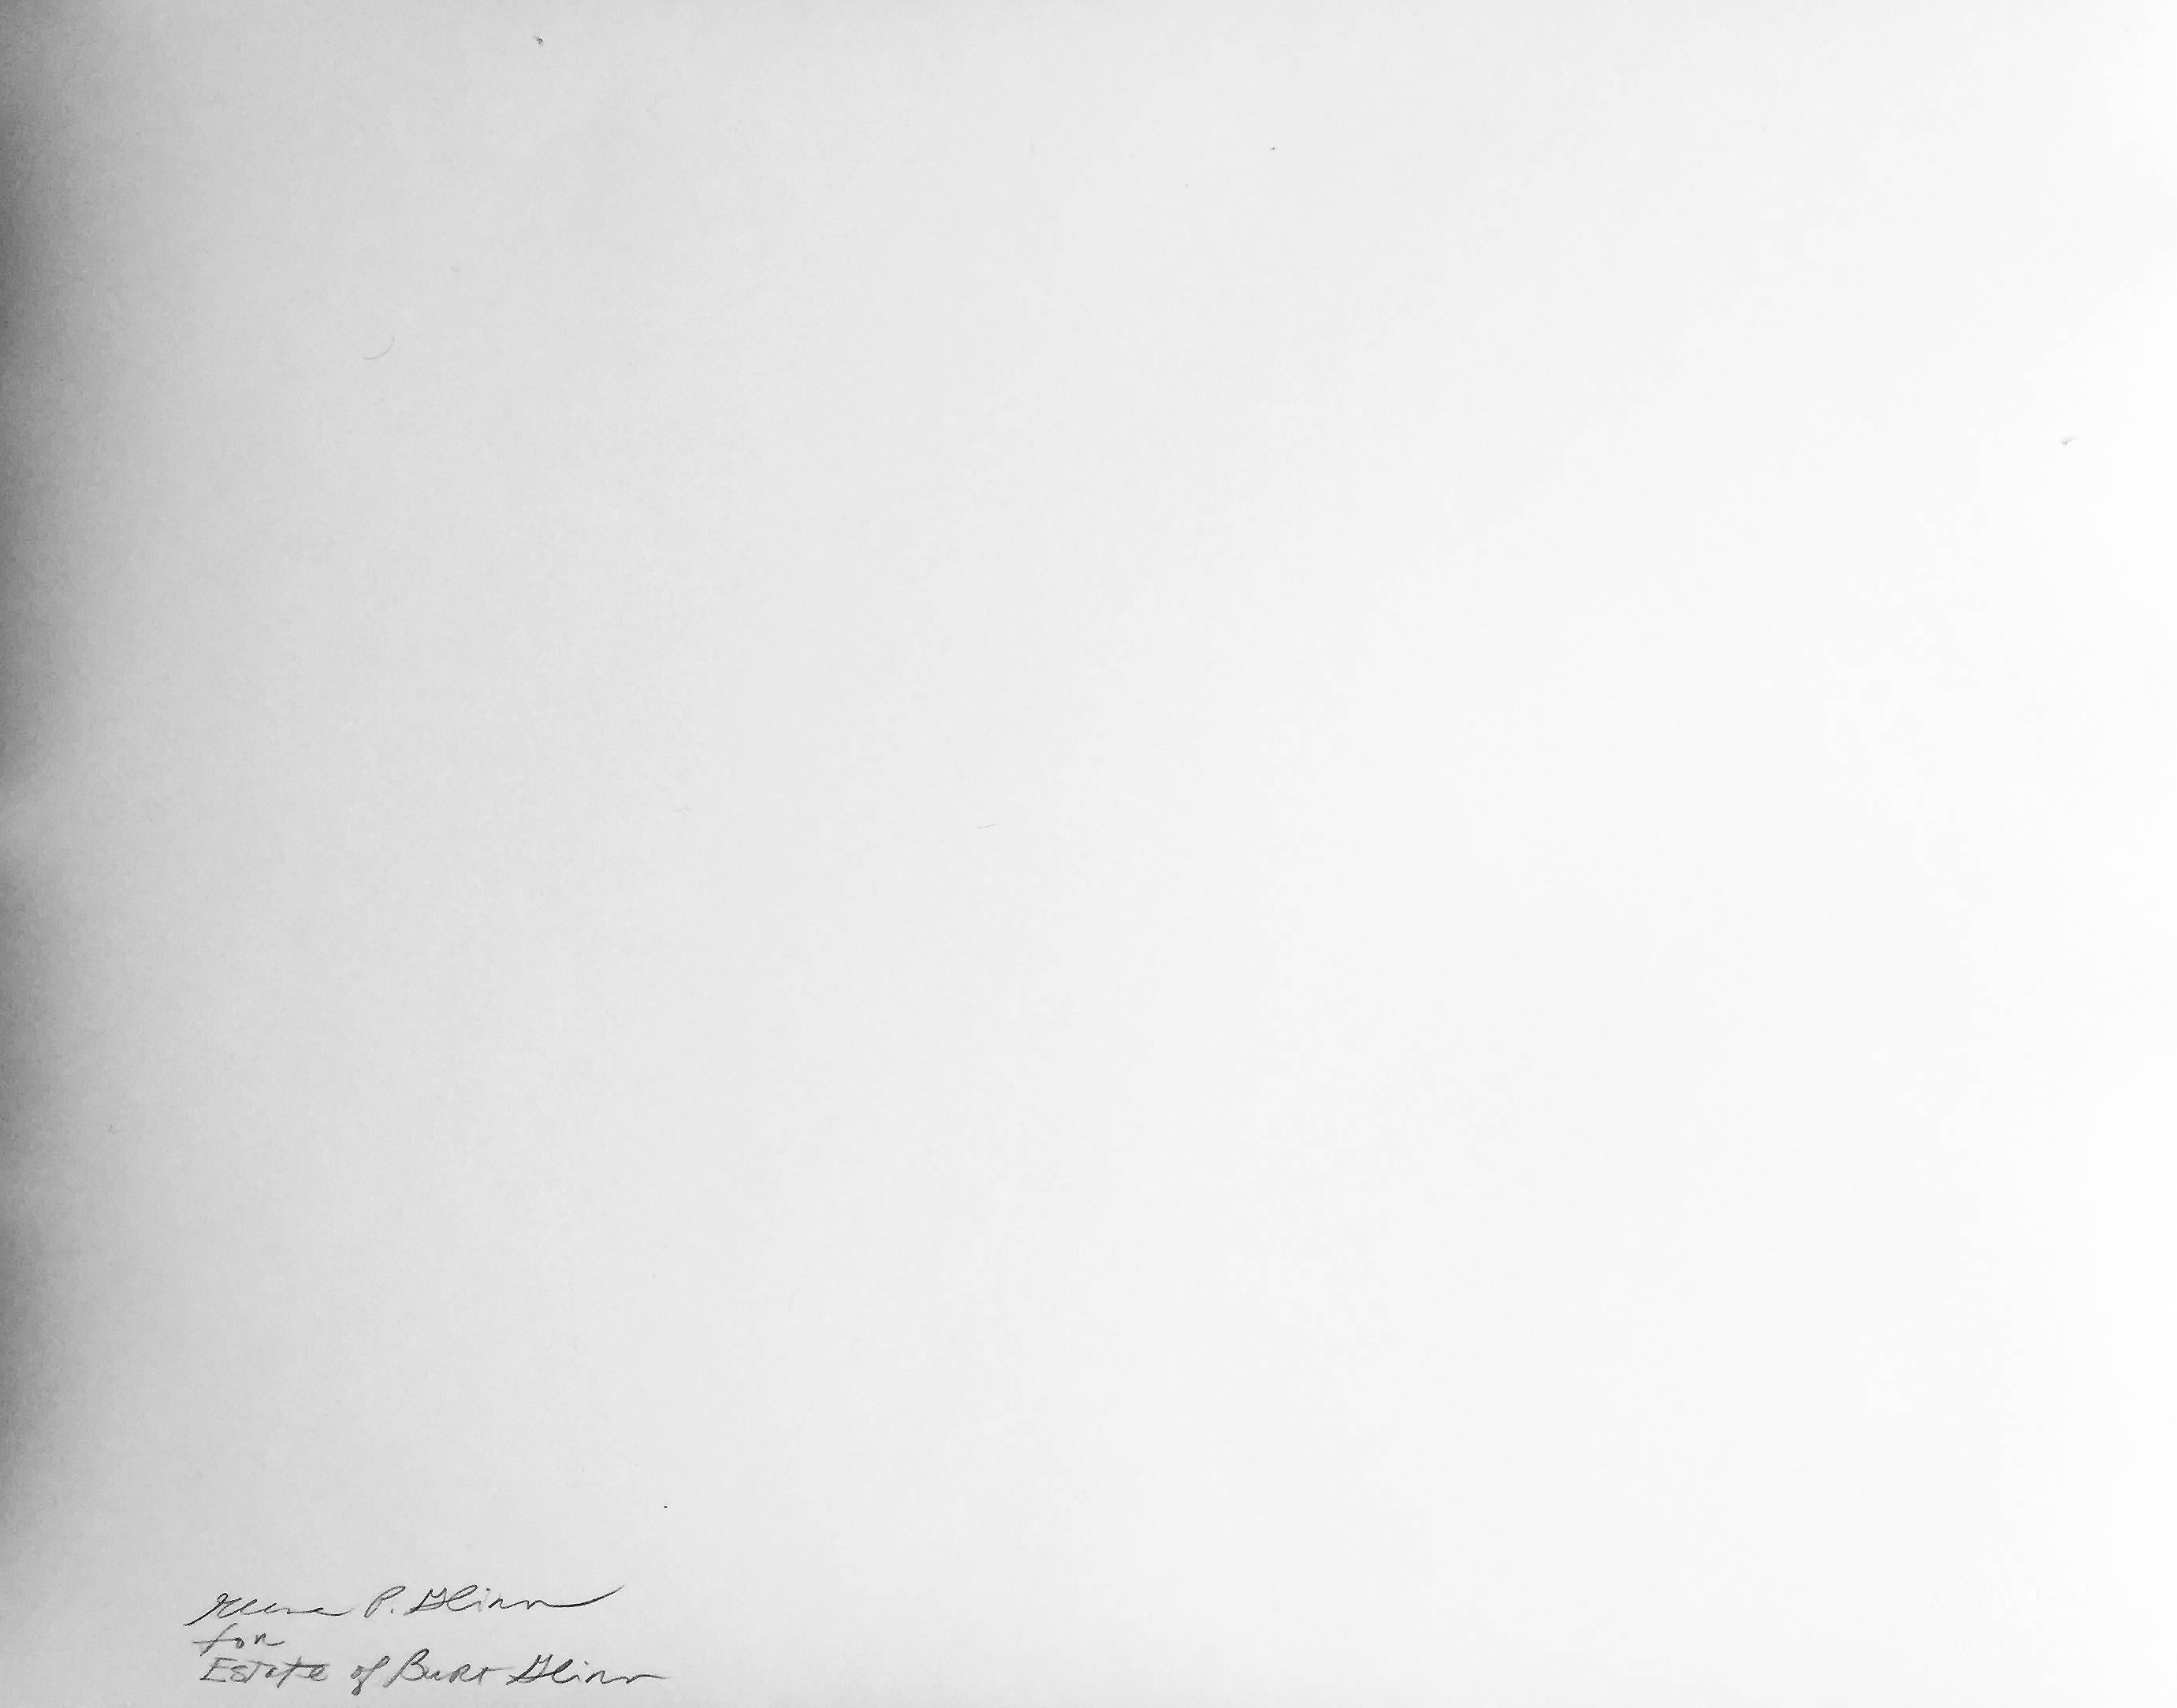 Helen Frankenthaler und David Smith, New York, Porträt zweier amerikanischer Künstler  – Photograph von Burt Glinn